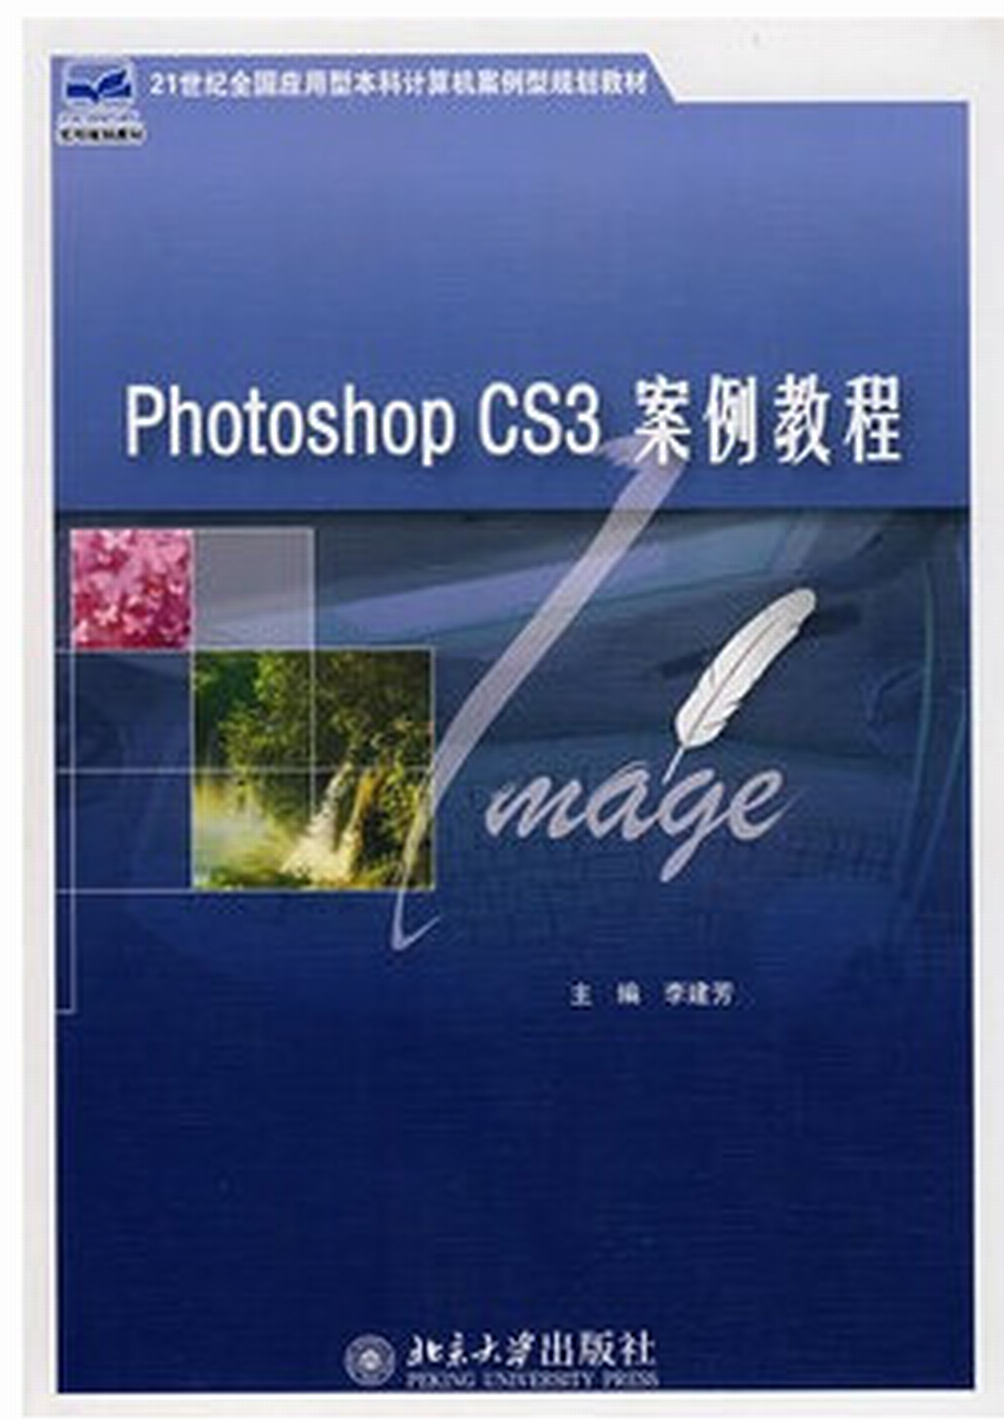 Photoshop CS3 案例教程